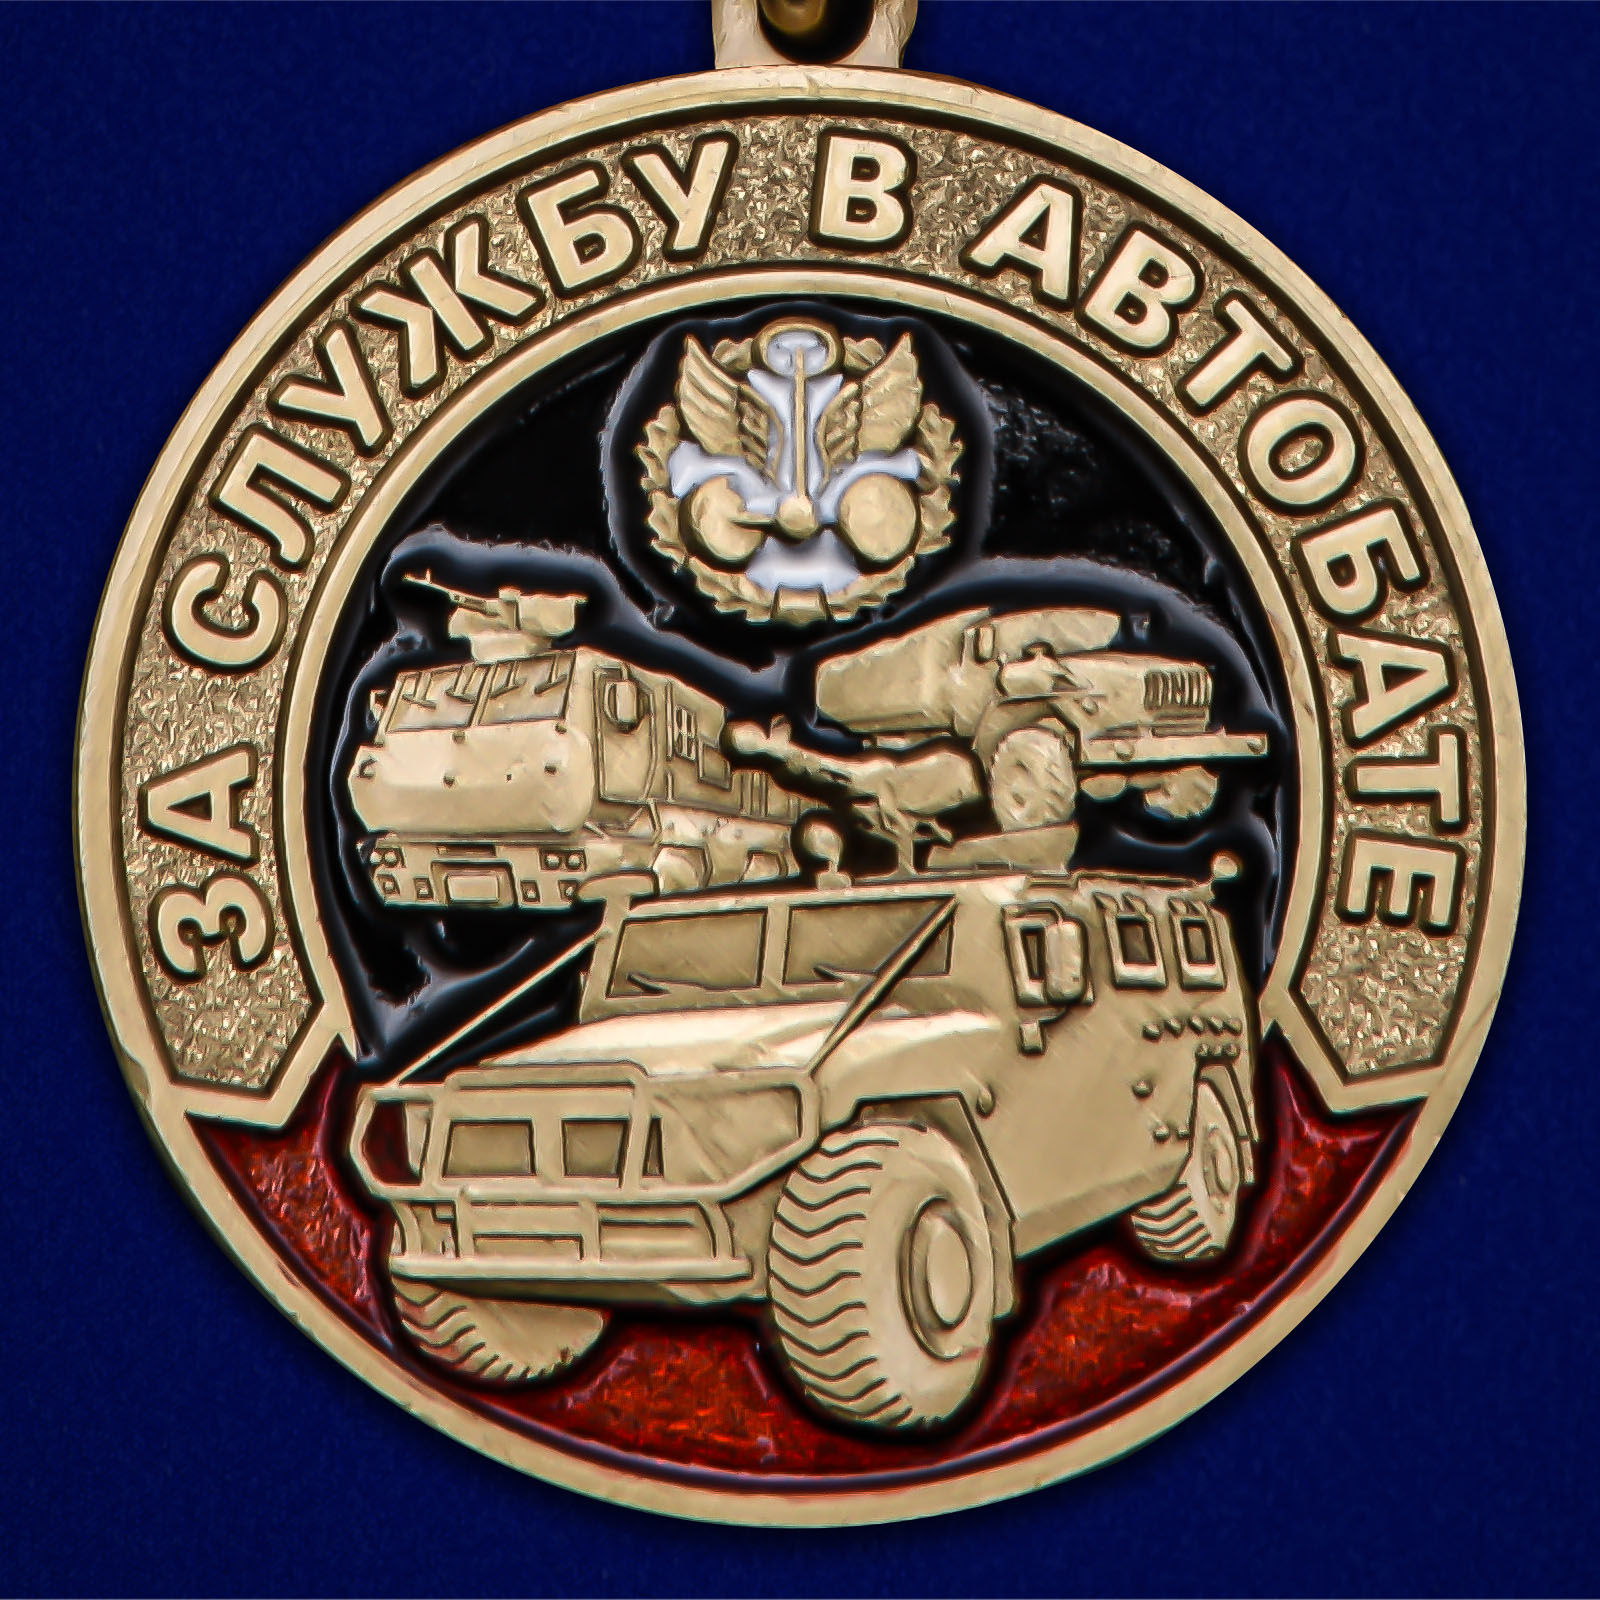 Медаль "За службу в Автобате" 